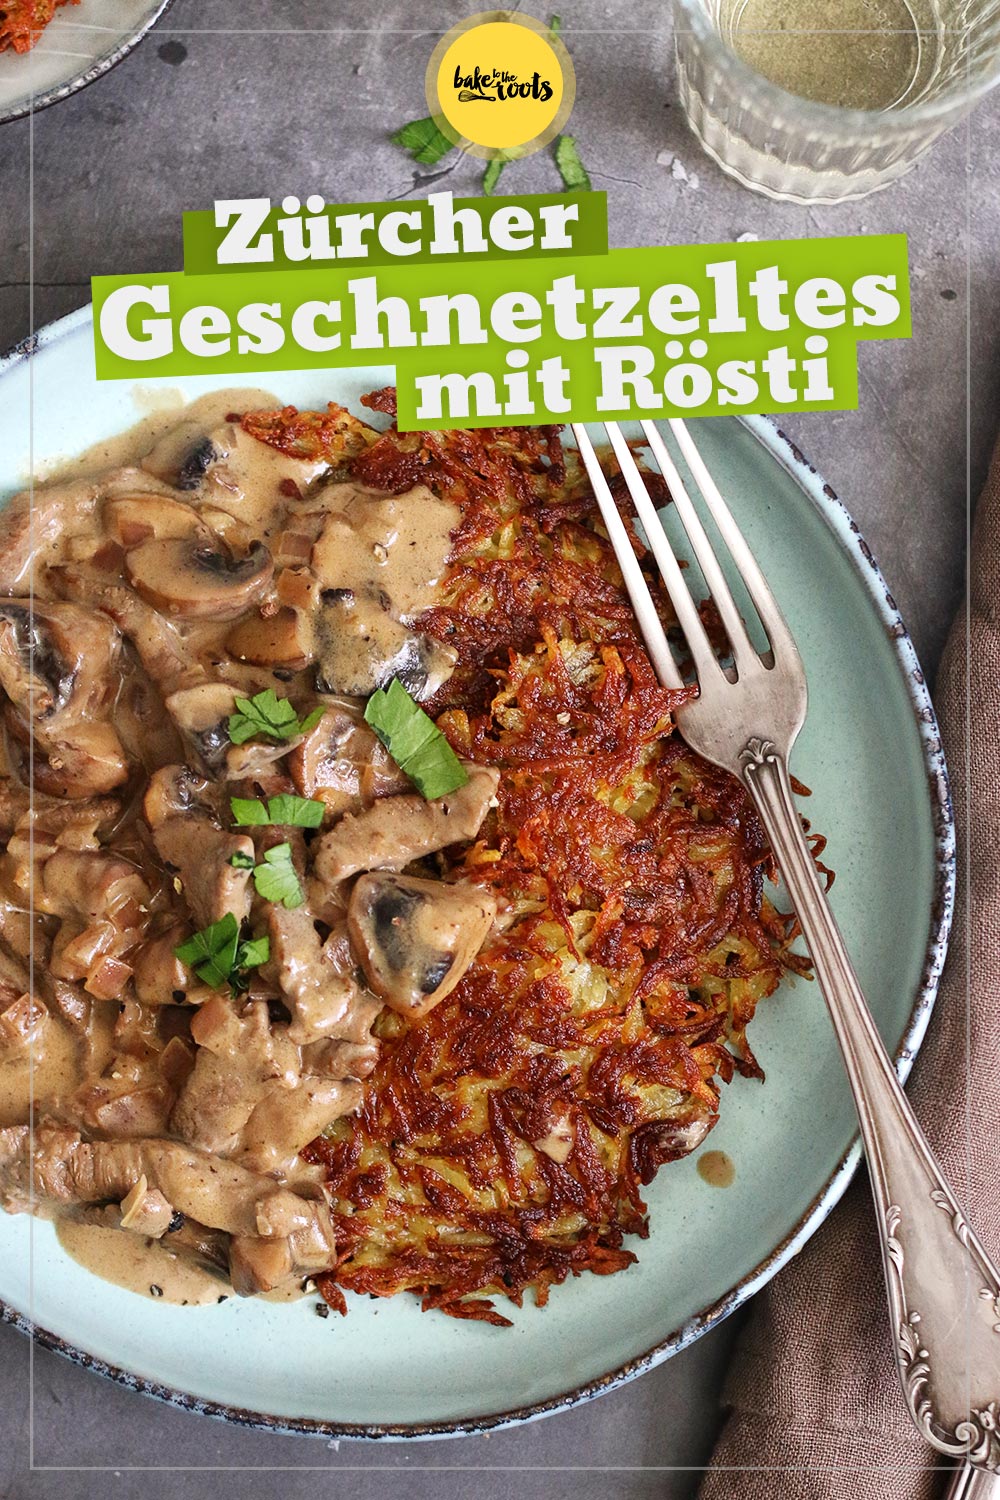 Zürcher Geschnetzeltes mit Rösti | Bake to the roots